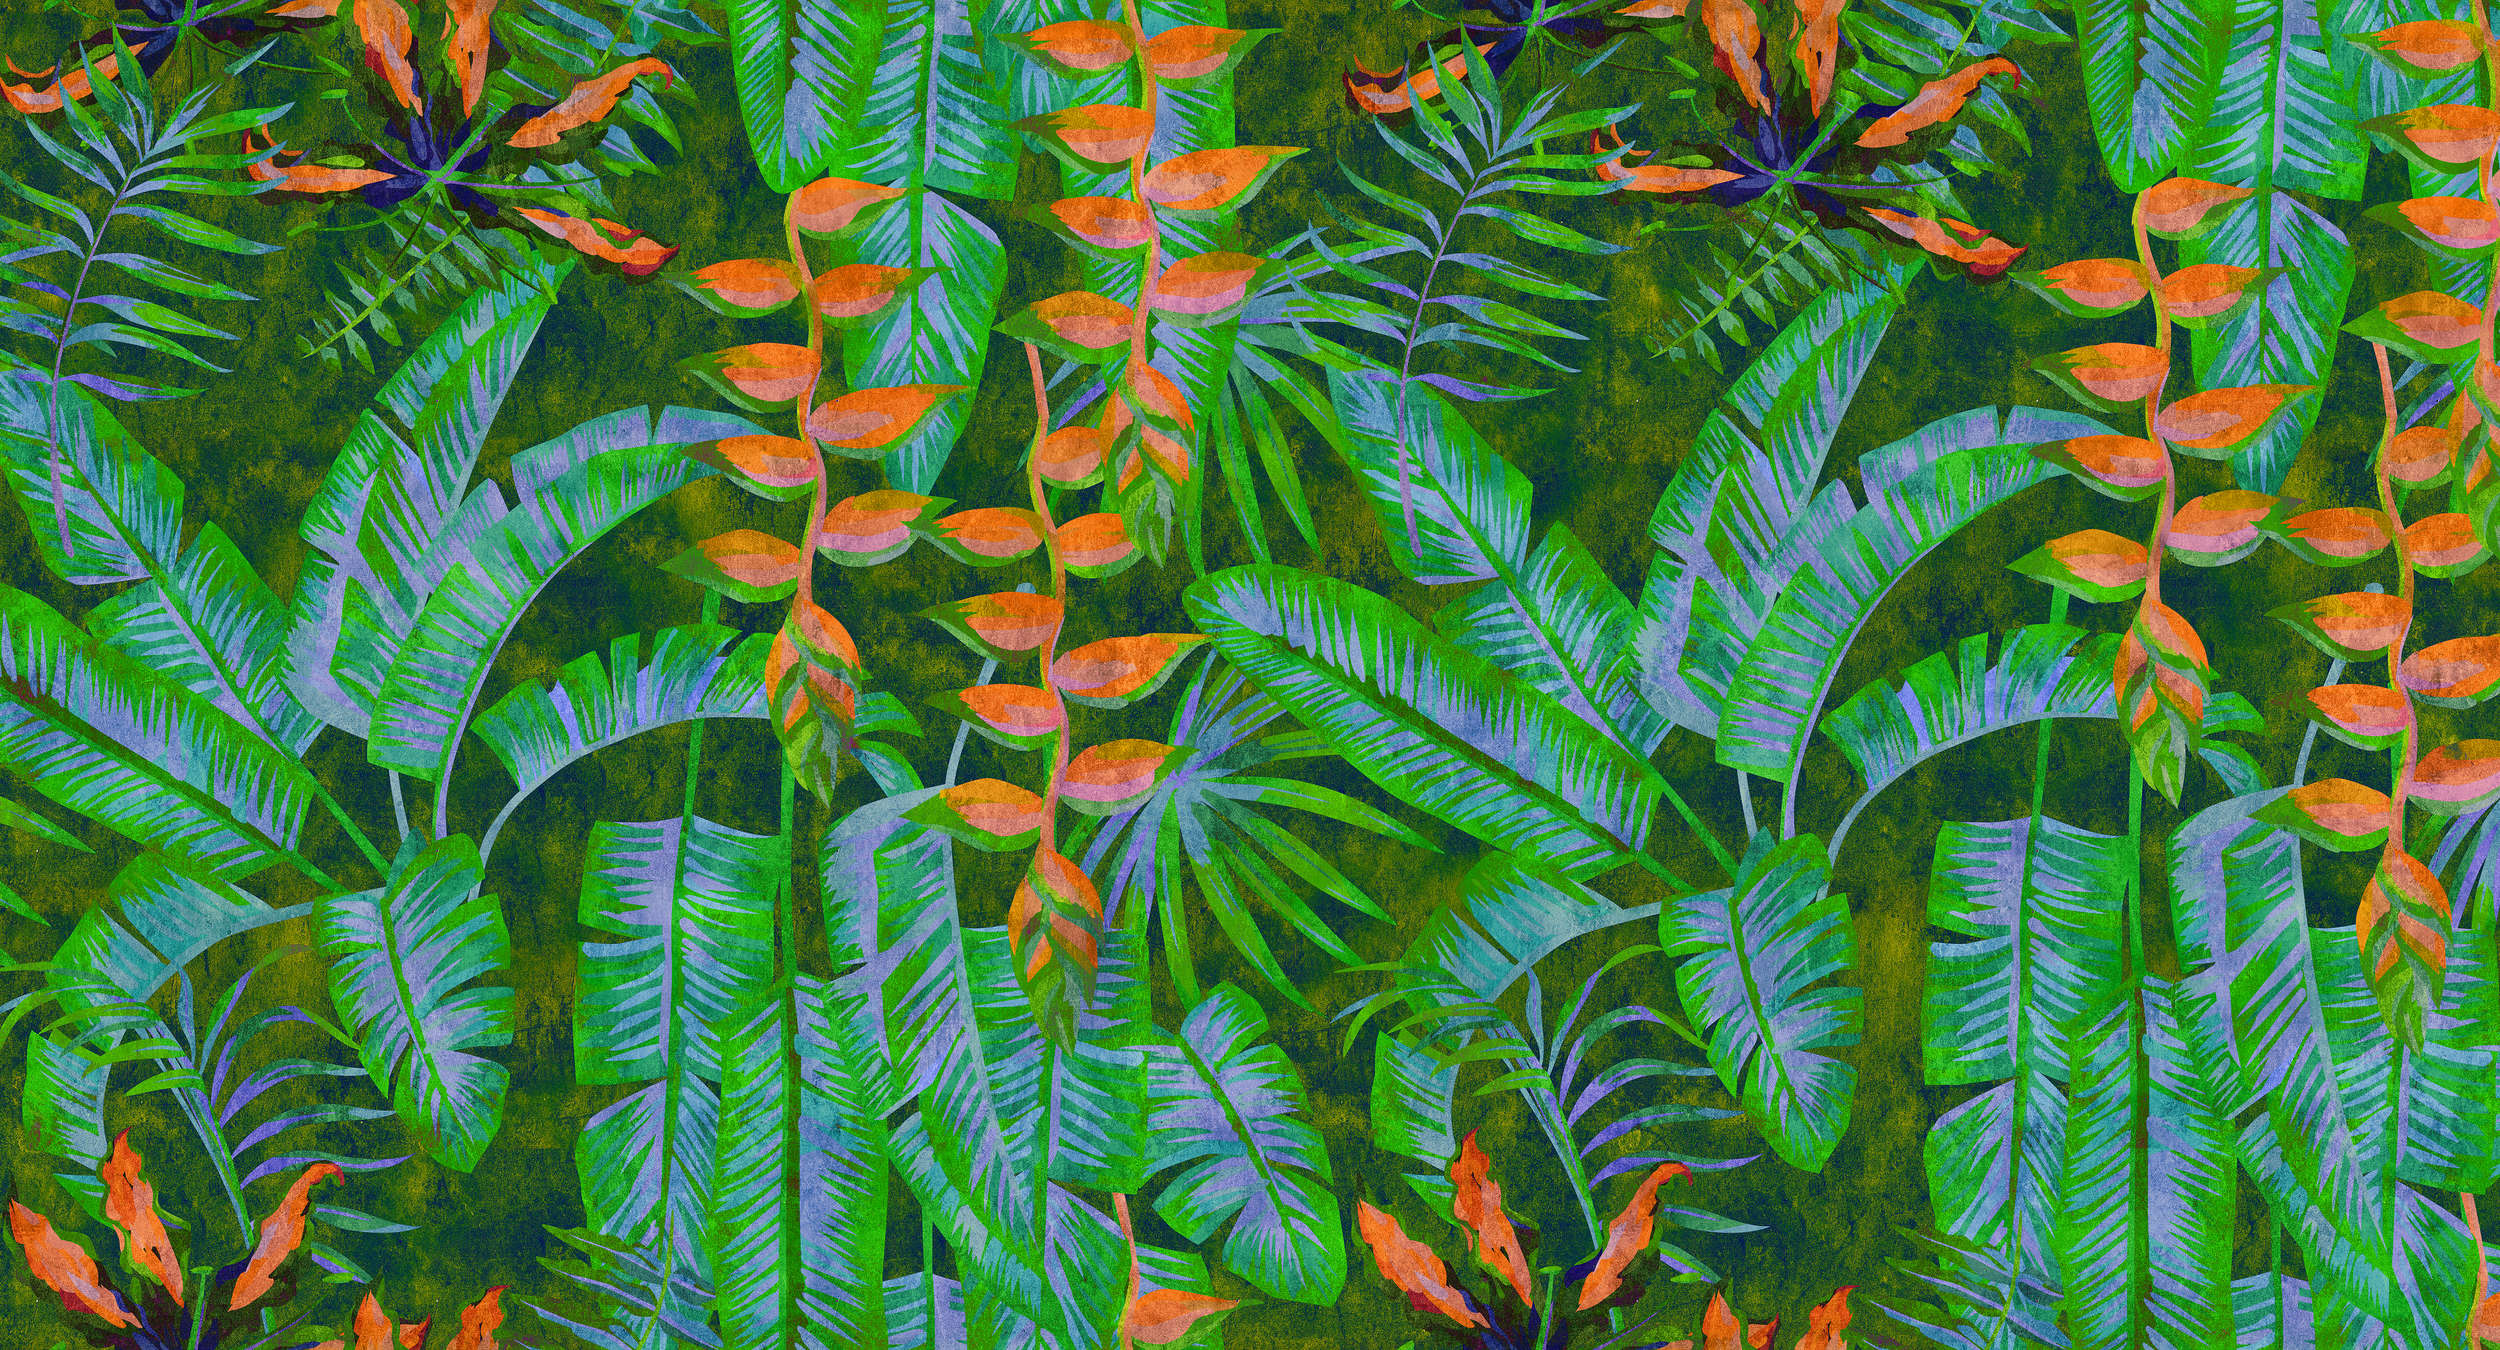             Tropicana 4 - Dschungel Fototapete mit knalligen Farben- Löschpapier Struktur – Grün, Orange | Perlmutt Glattvlies
        